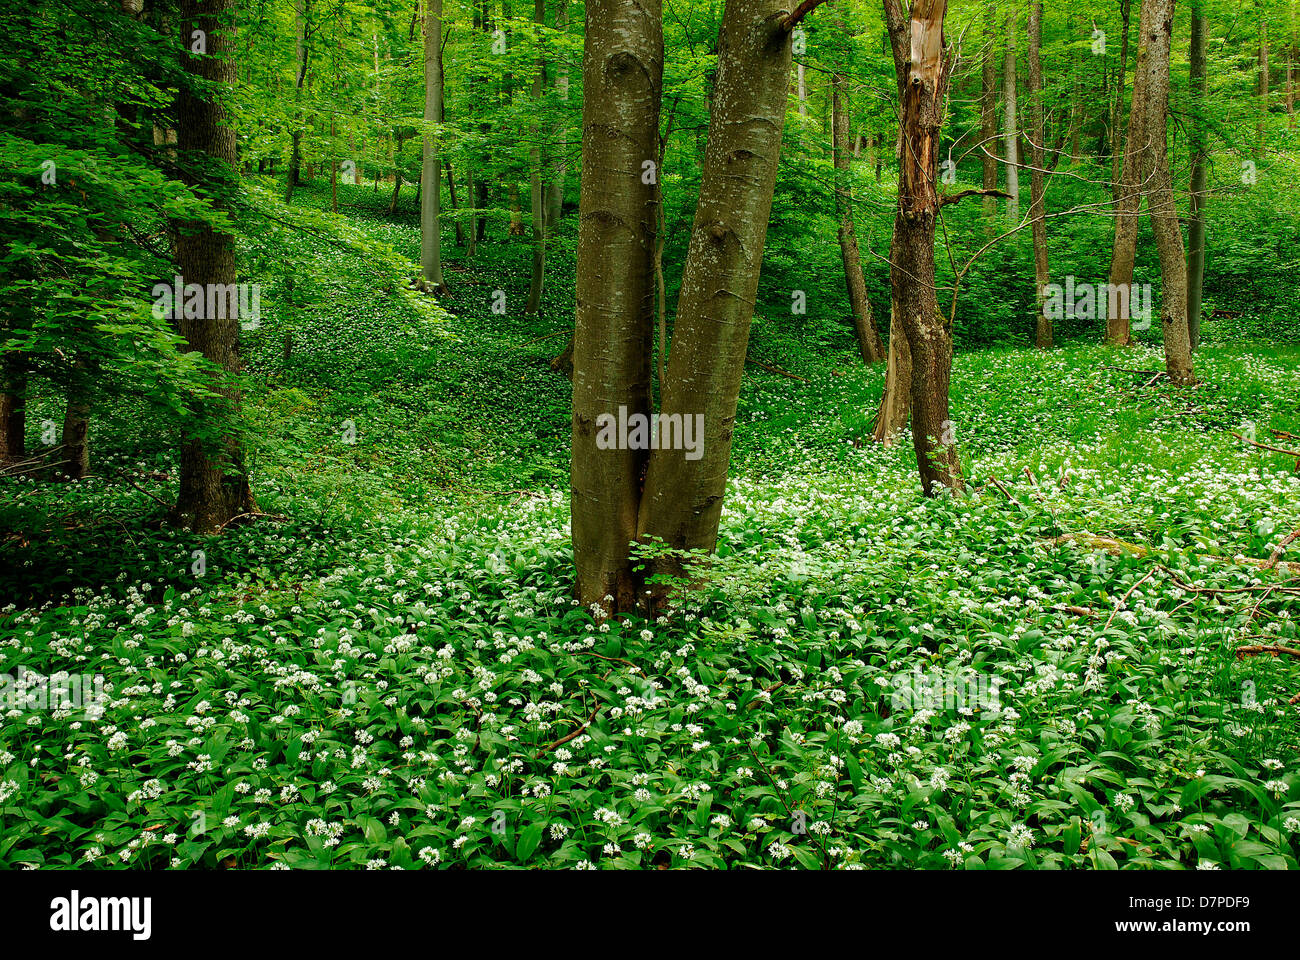 Bärlauch (Allium Ursinum), Bärlauch-Feld in den Laubwald, Baerlauch (Allium Ursinum), Baerlauchfeld Im Laubwald Stockfoto